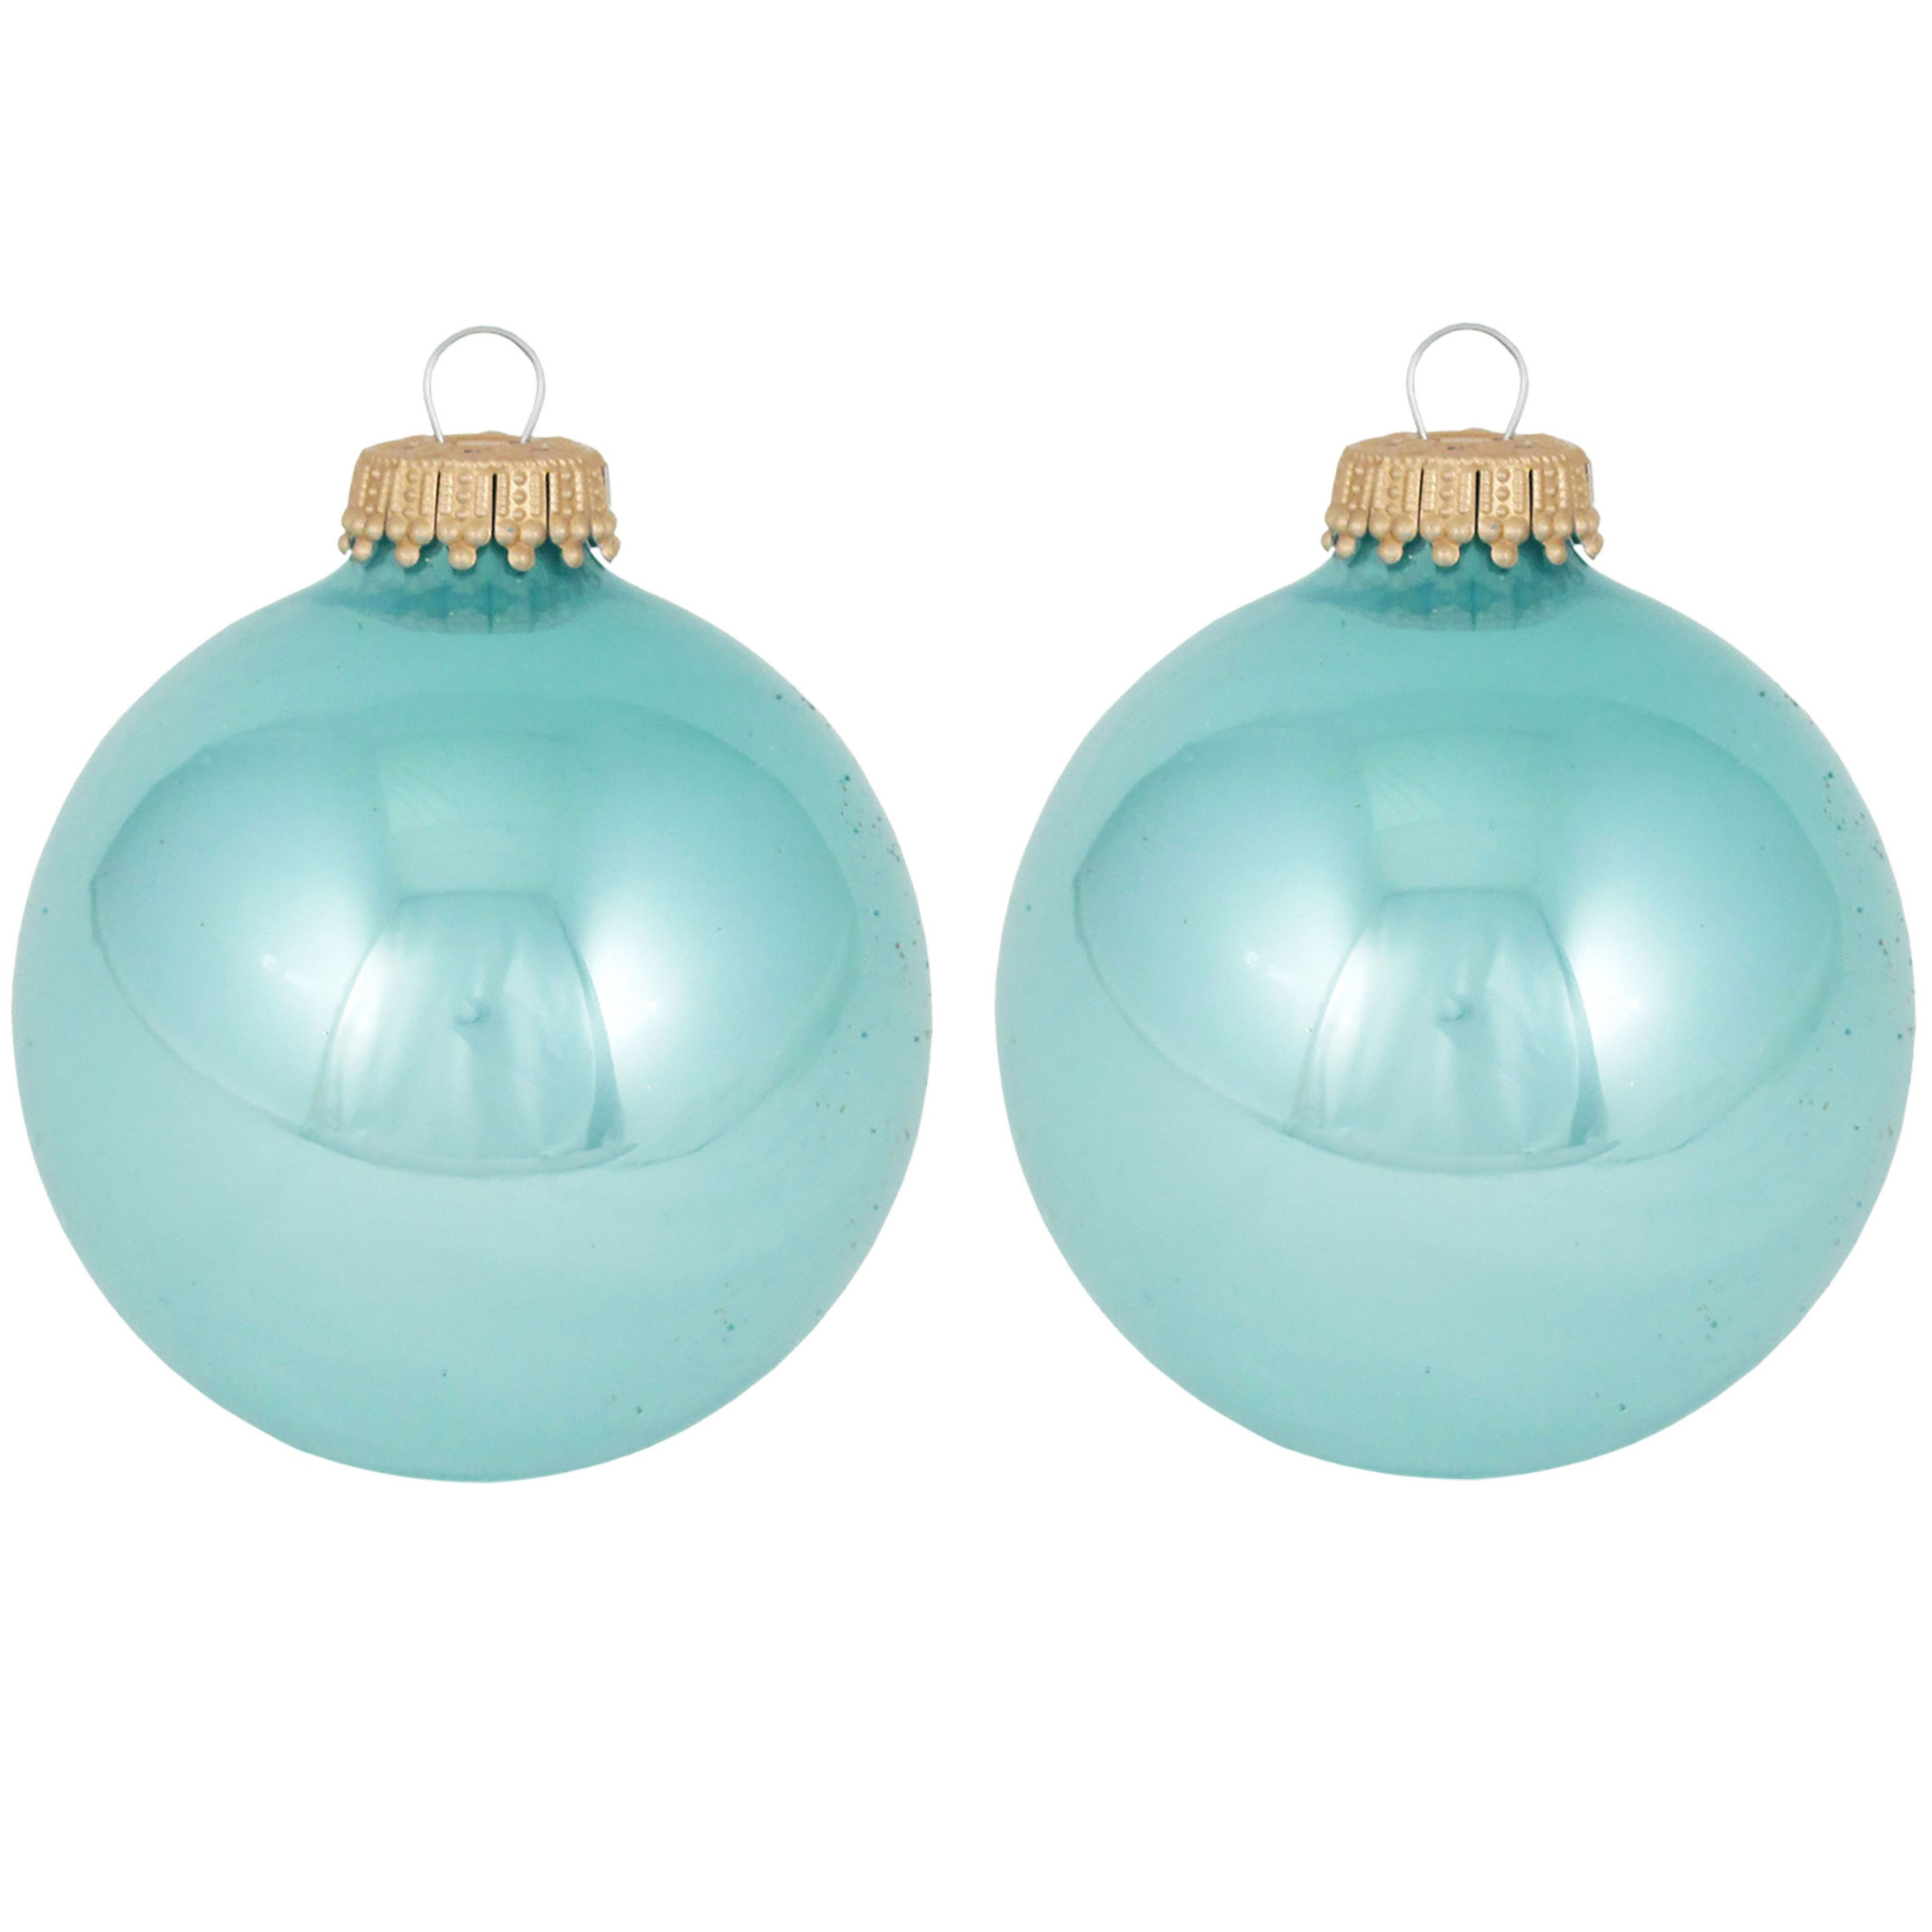 16x Waterlelie blauwe glazen kerstballen glans 7 cm kerstboomversiering